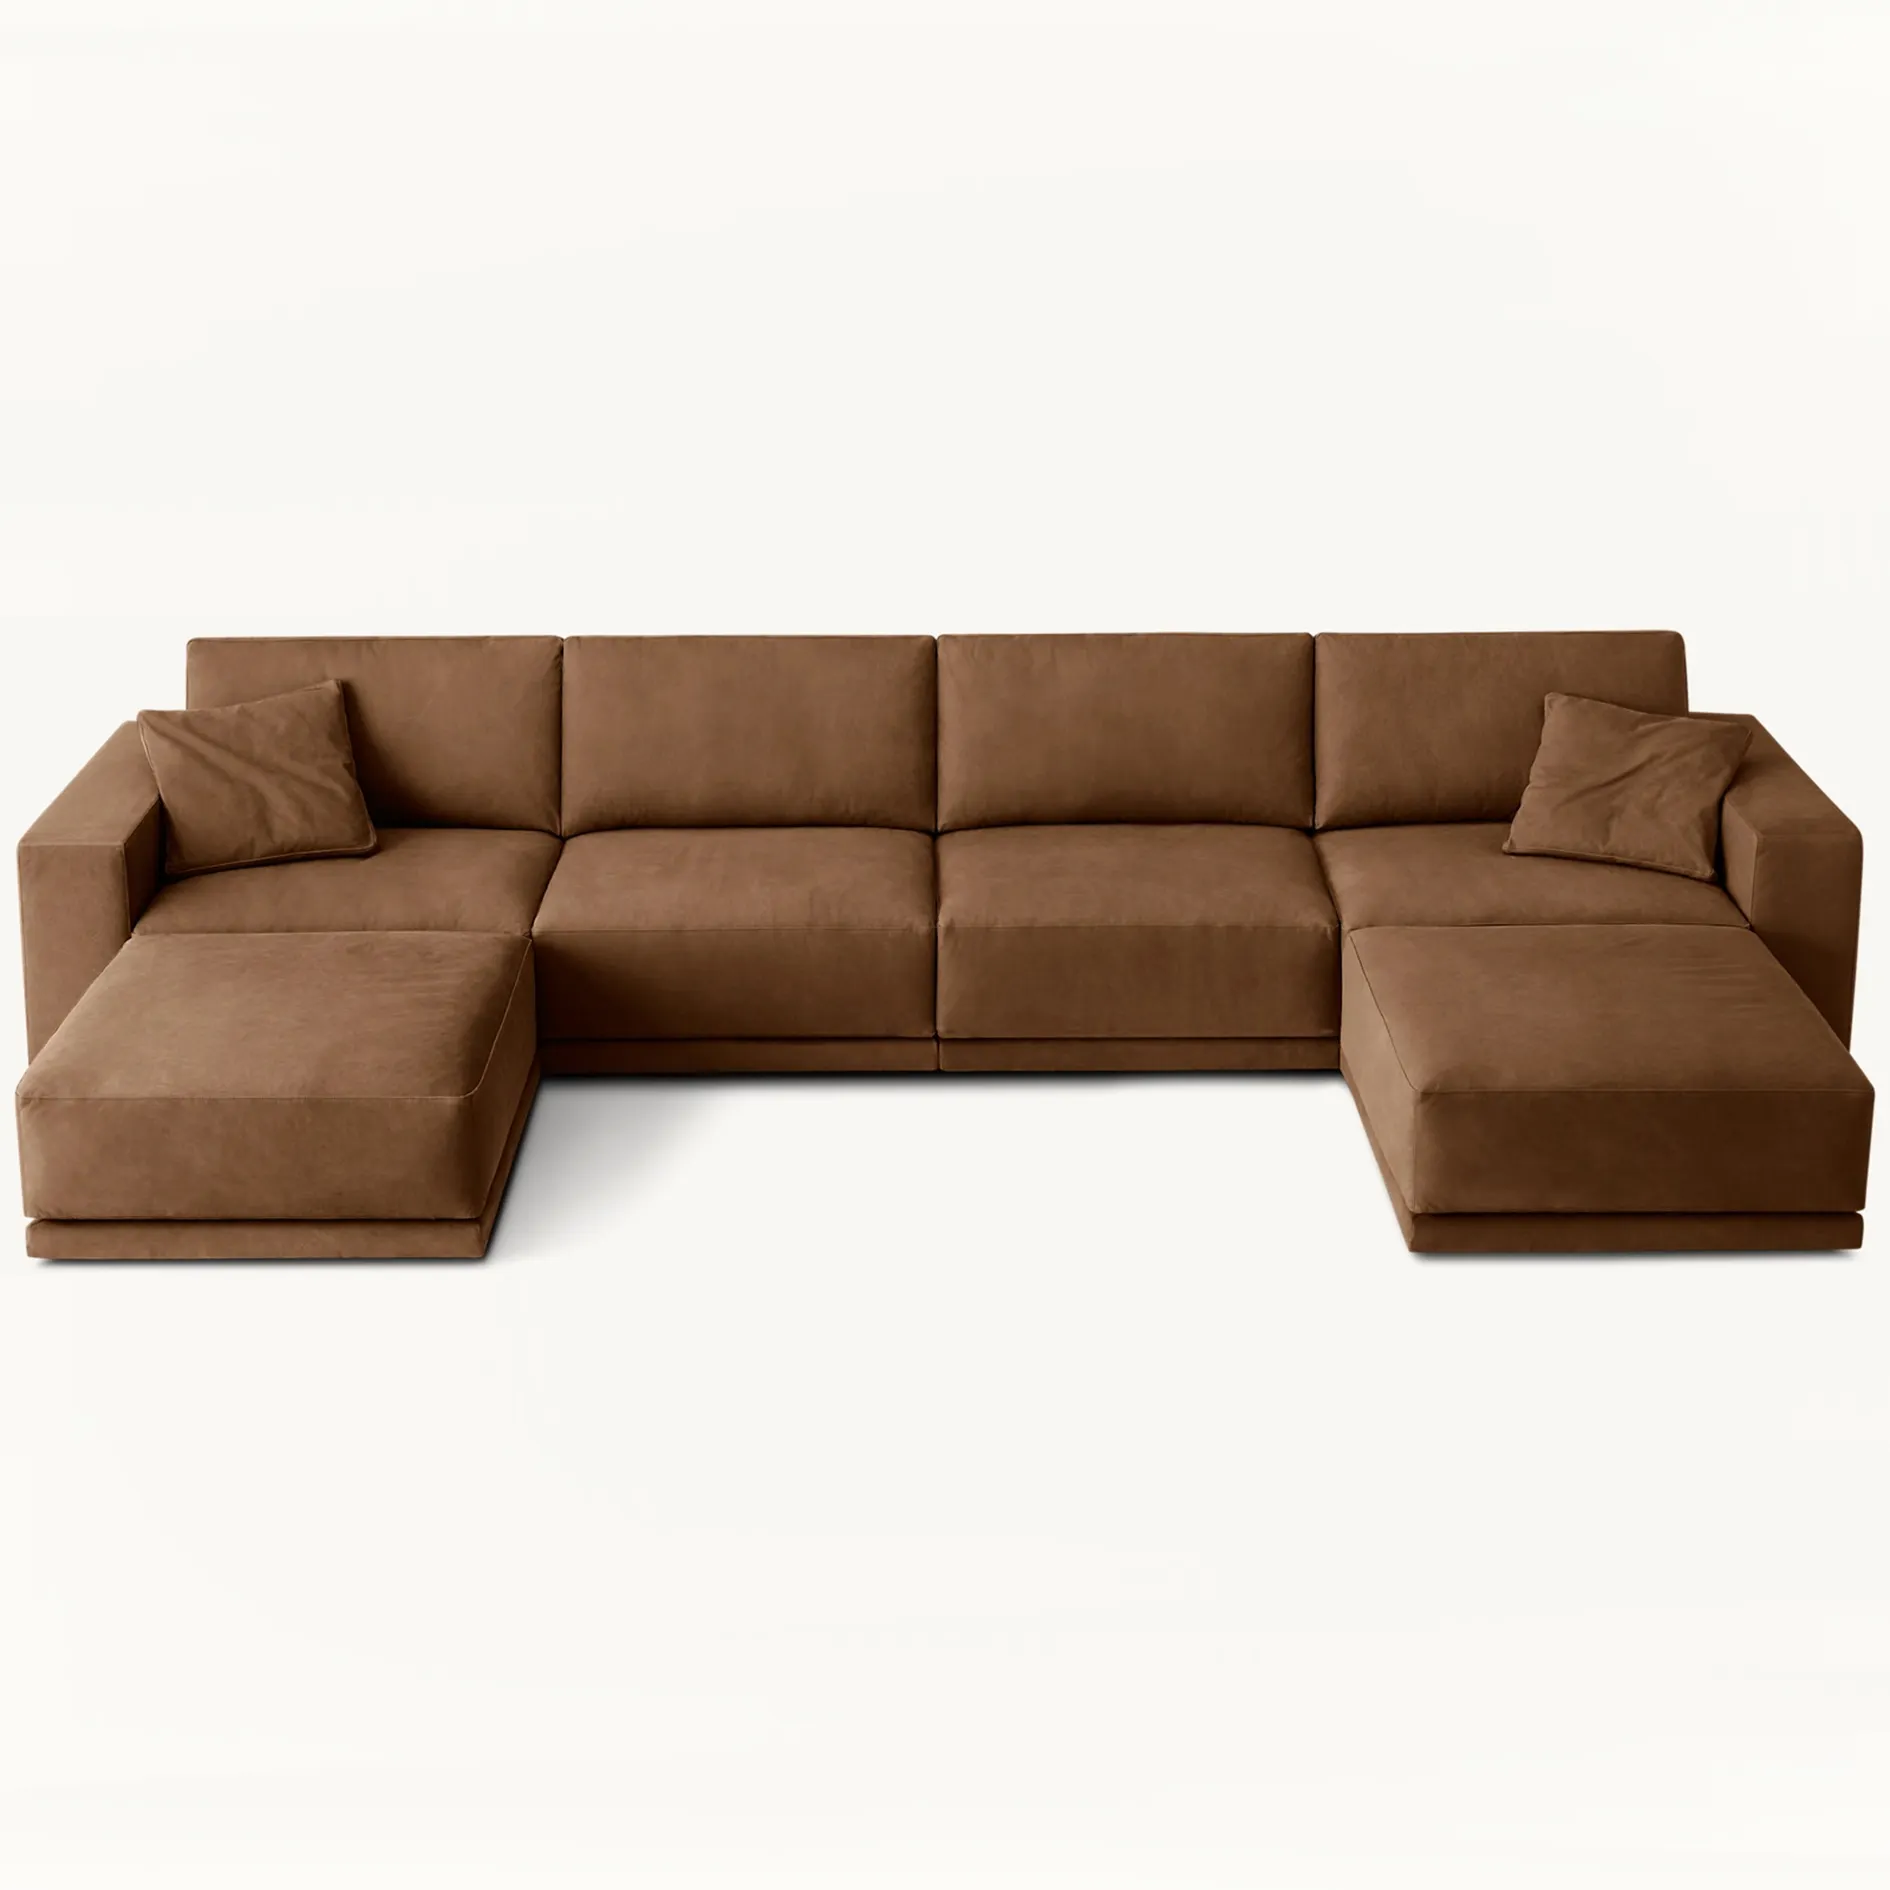 Juego de sala de estar moderna de estilo europeo sofá de salón de cuero reclinable cómodo de lujo interior